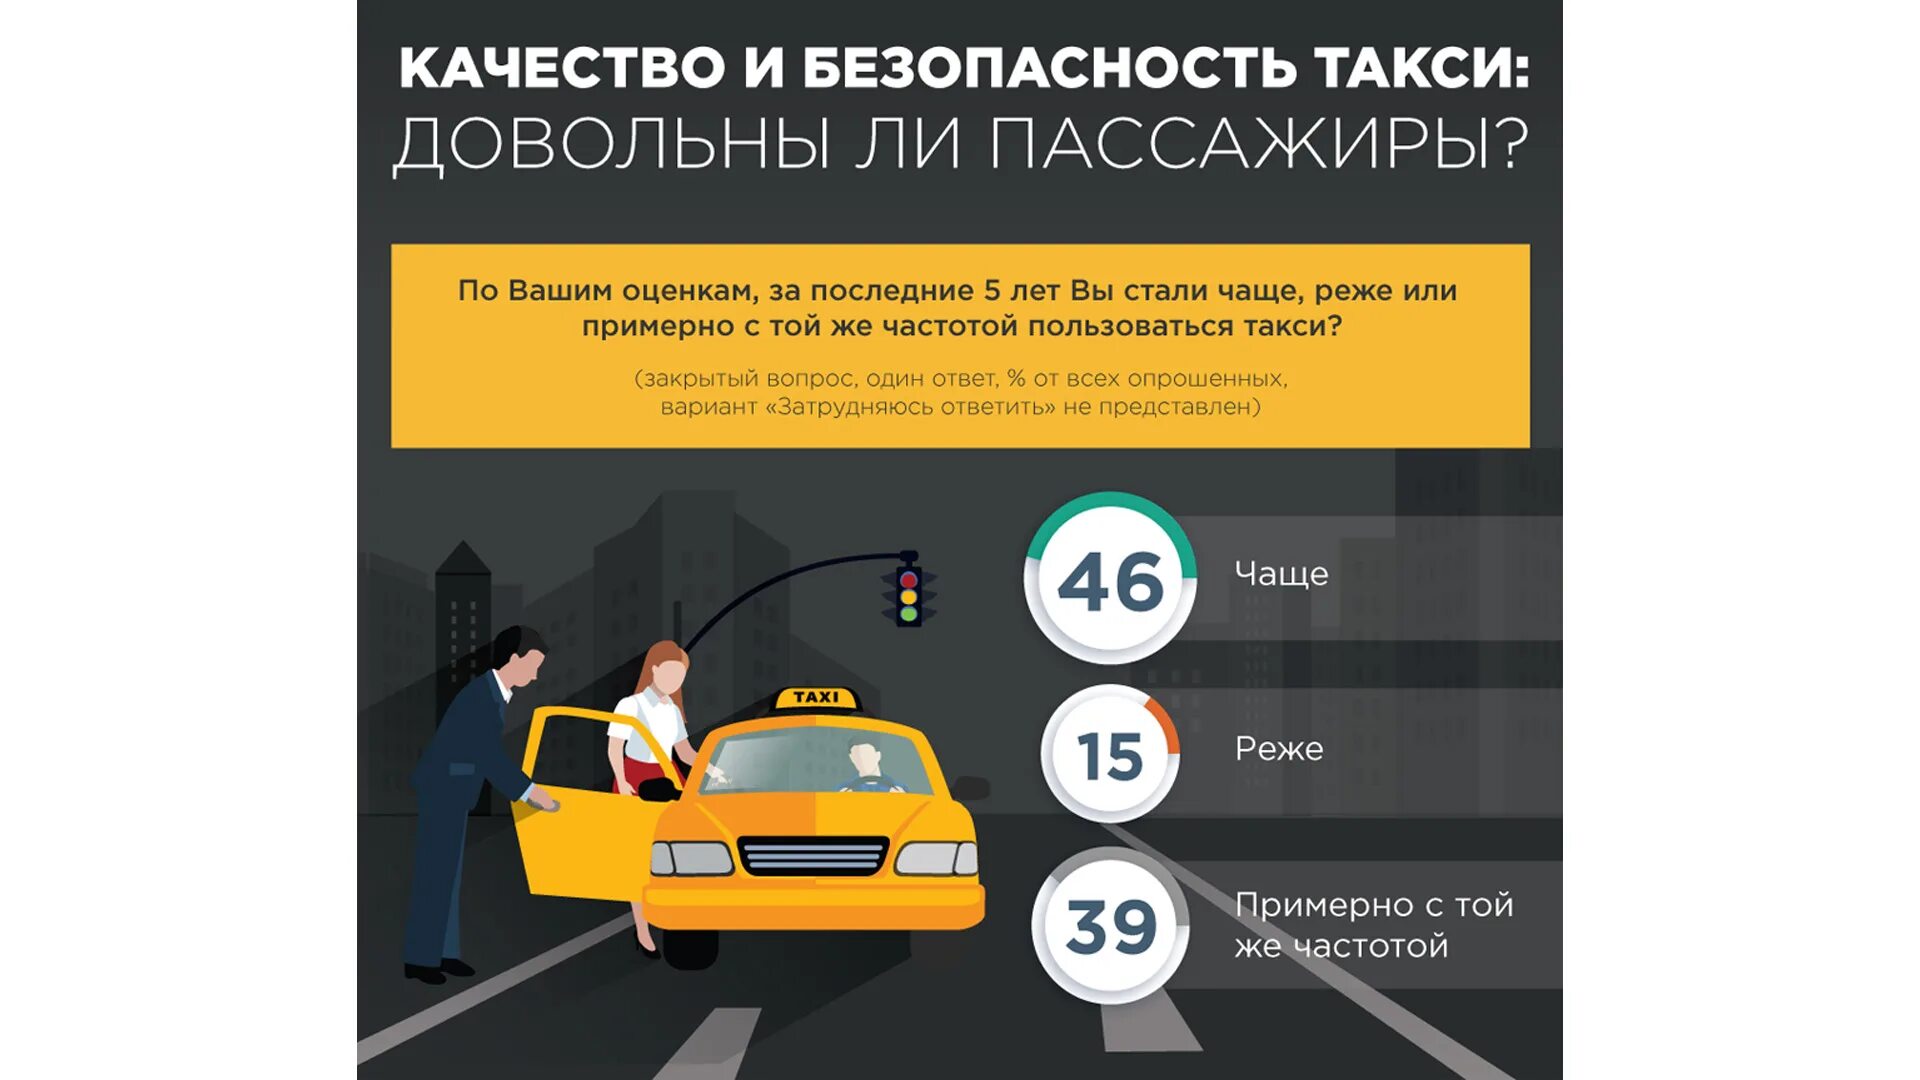 Безопасность в такси. Инфографика такси. Безопасность пассажира в такси. Безопасность клиента такси. Правила для водителей такси